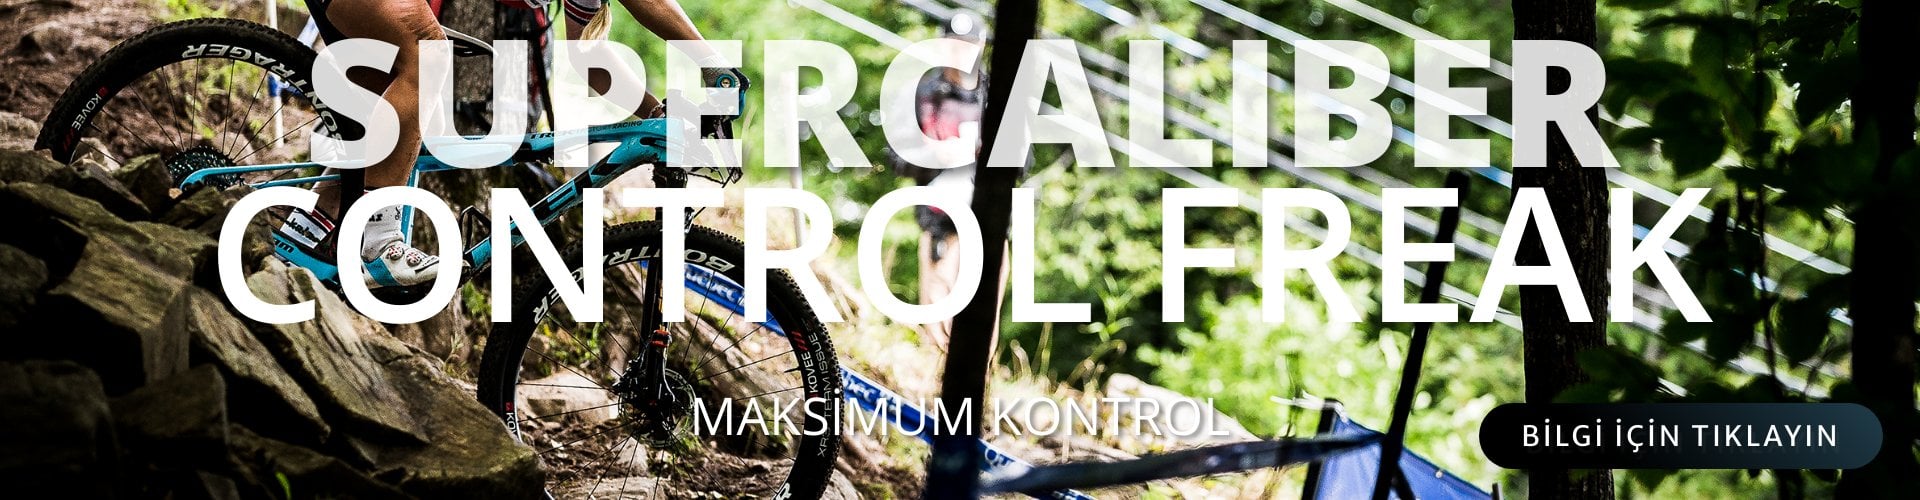 Trek Bisiklet Türkiye Dağ Bisikletleri En Uygun Bisiklet Tıklayın Supercaliber